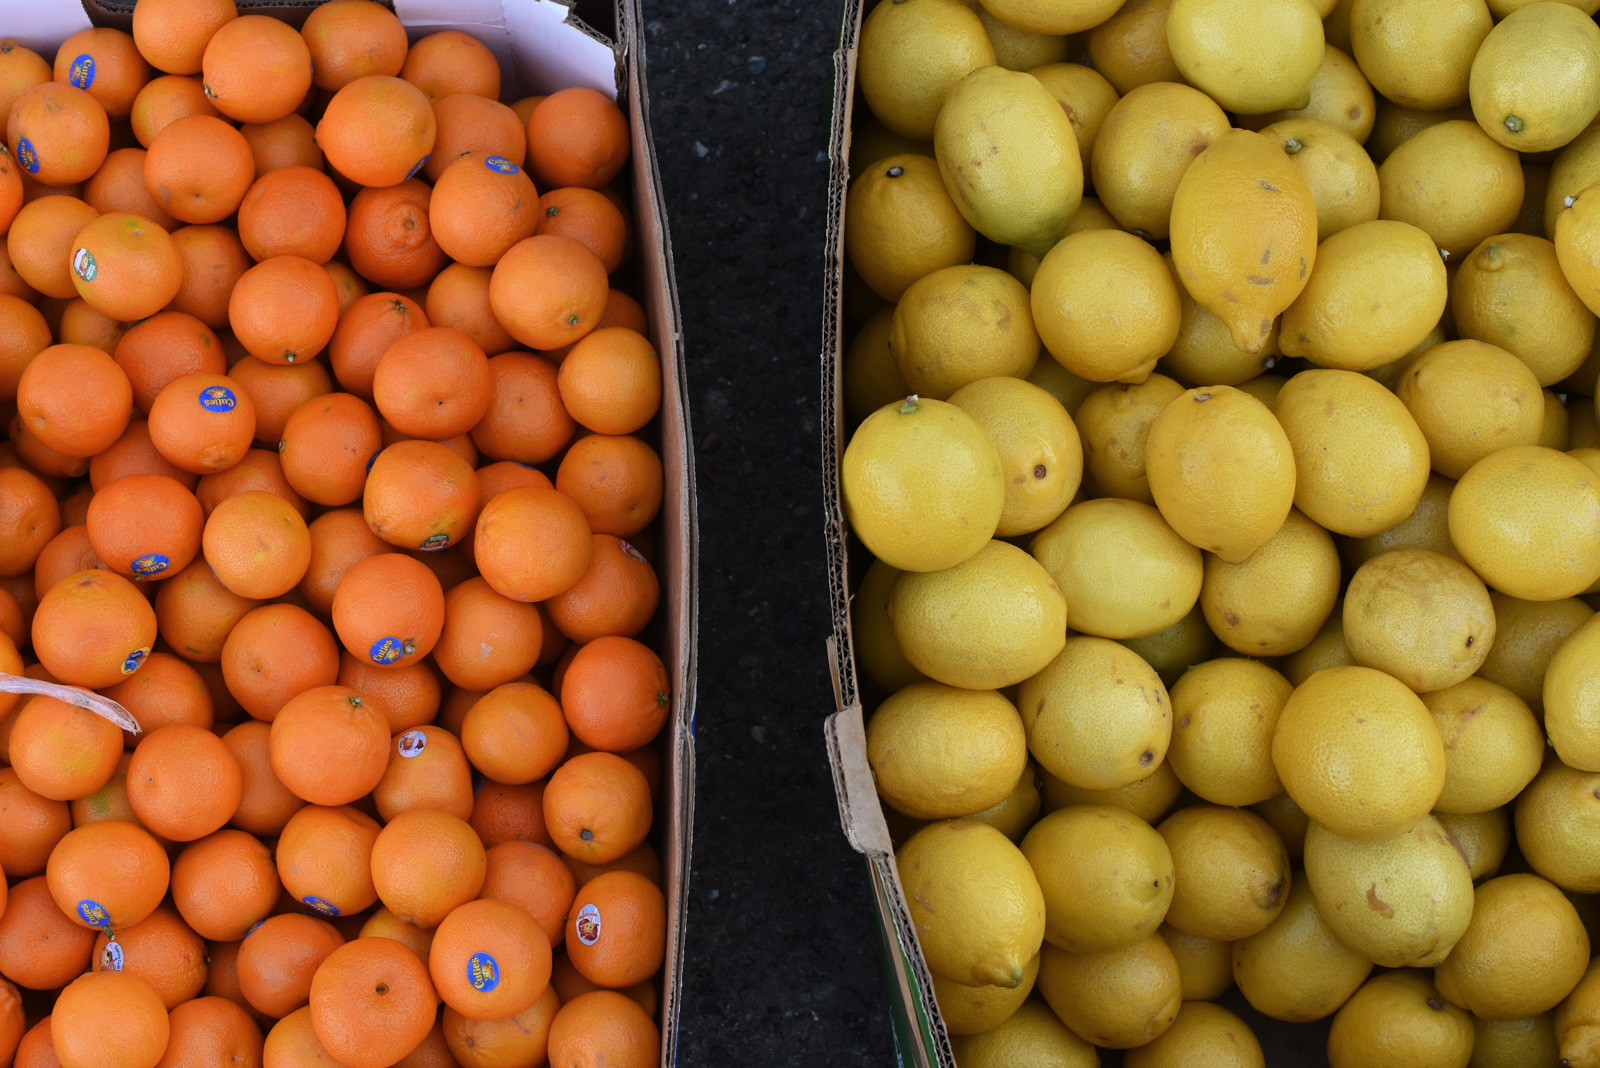 Mandarins and lemons in boxes.